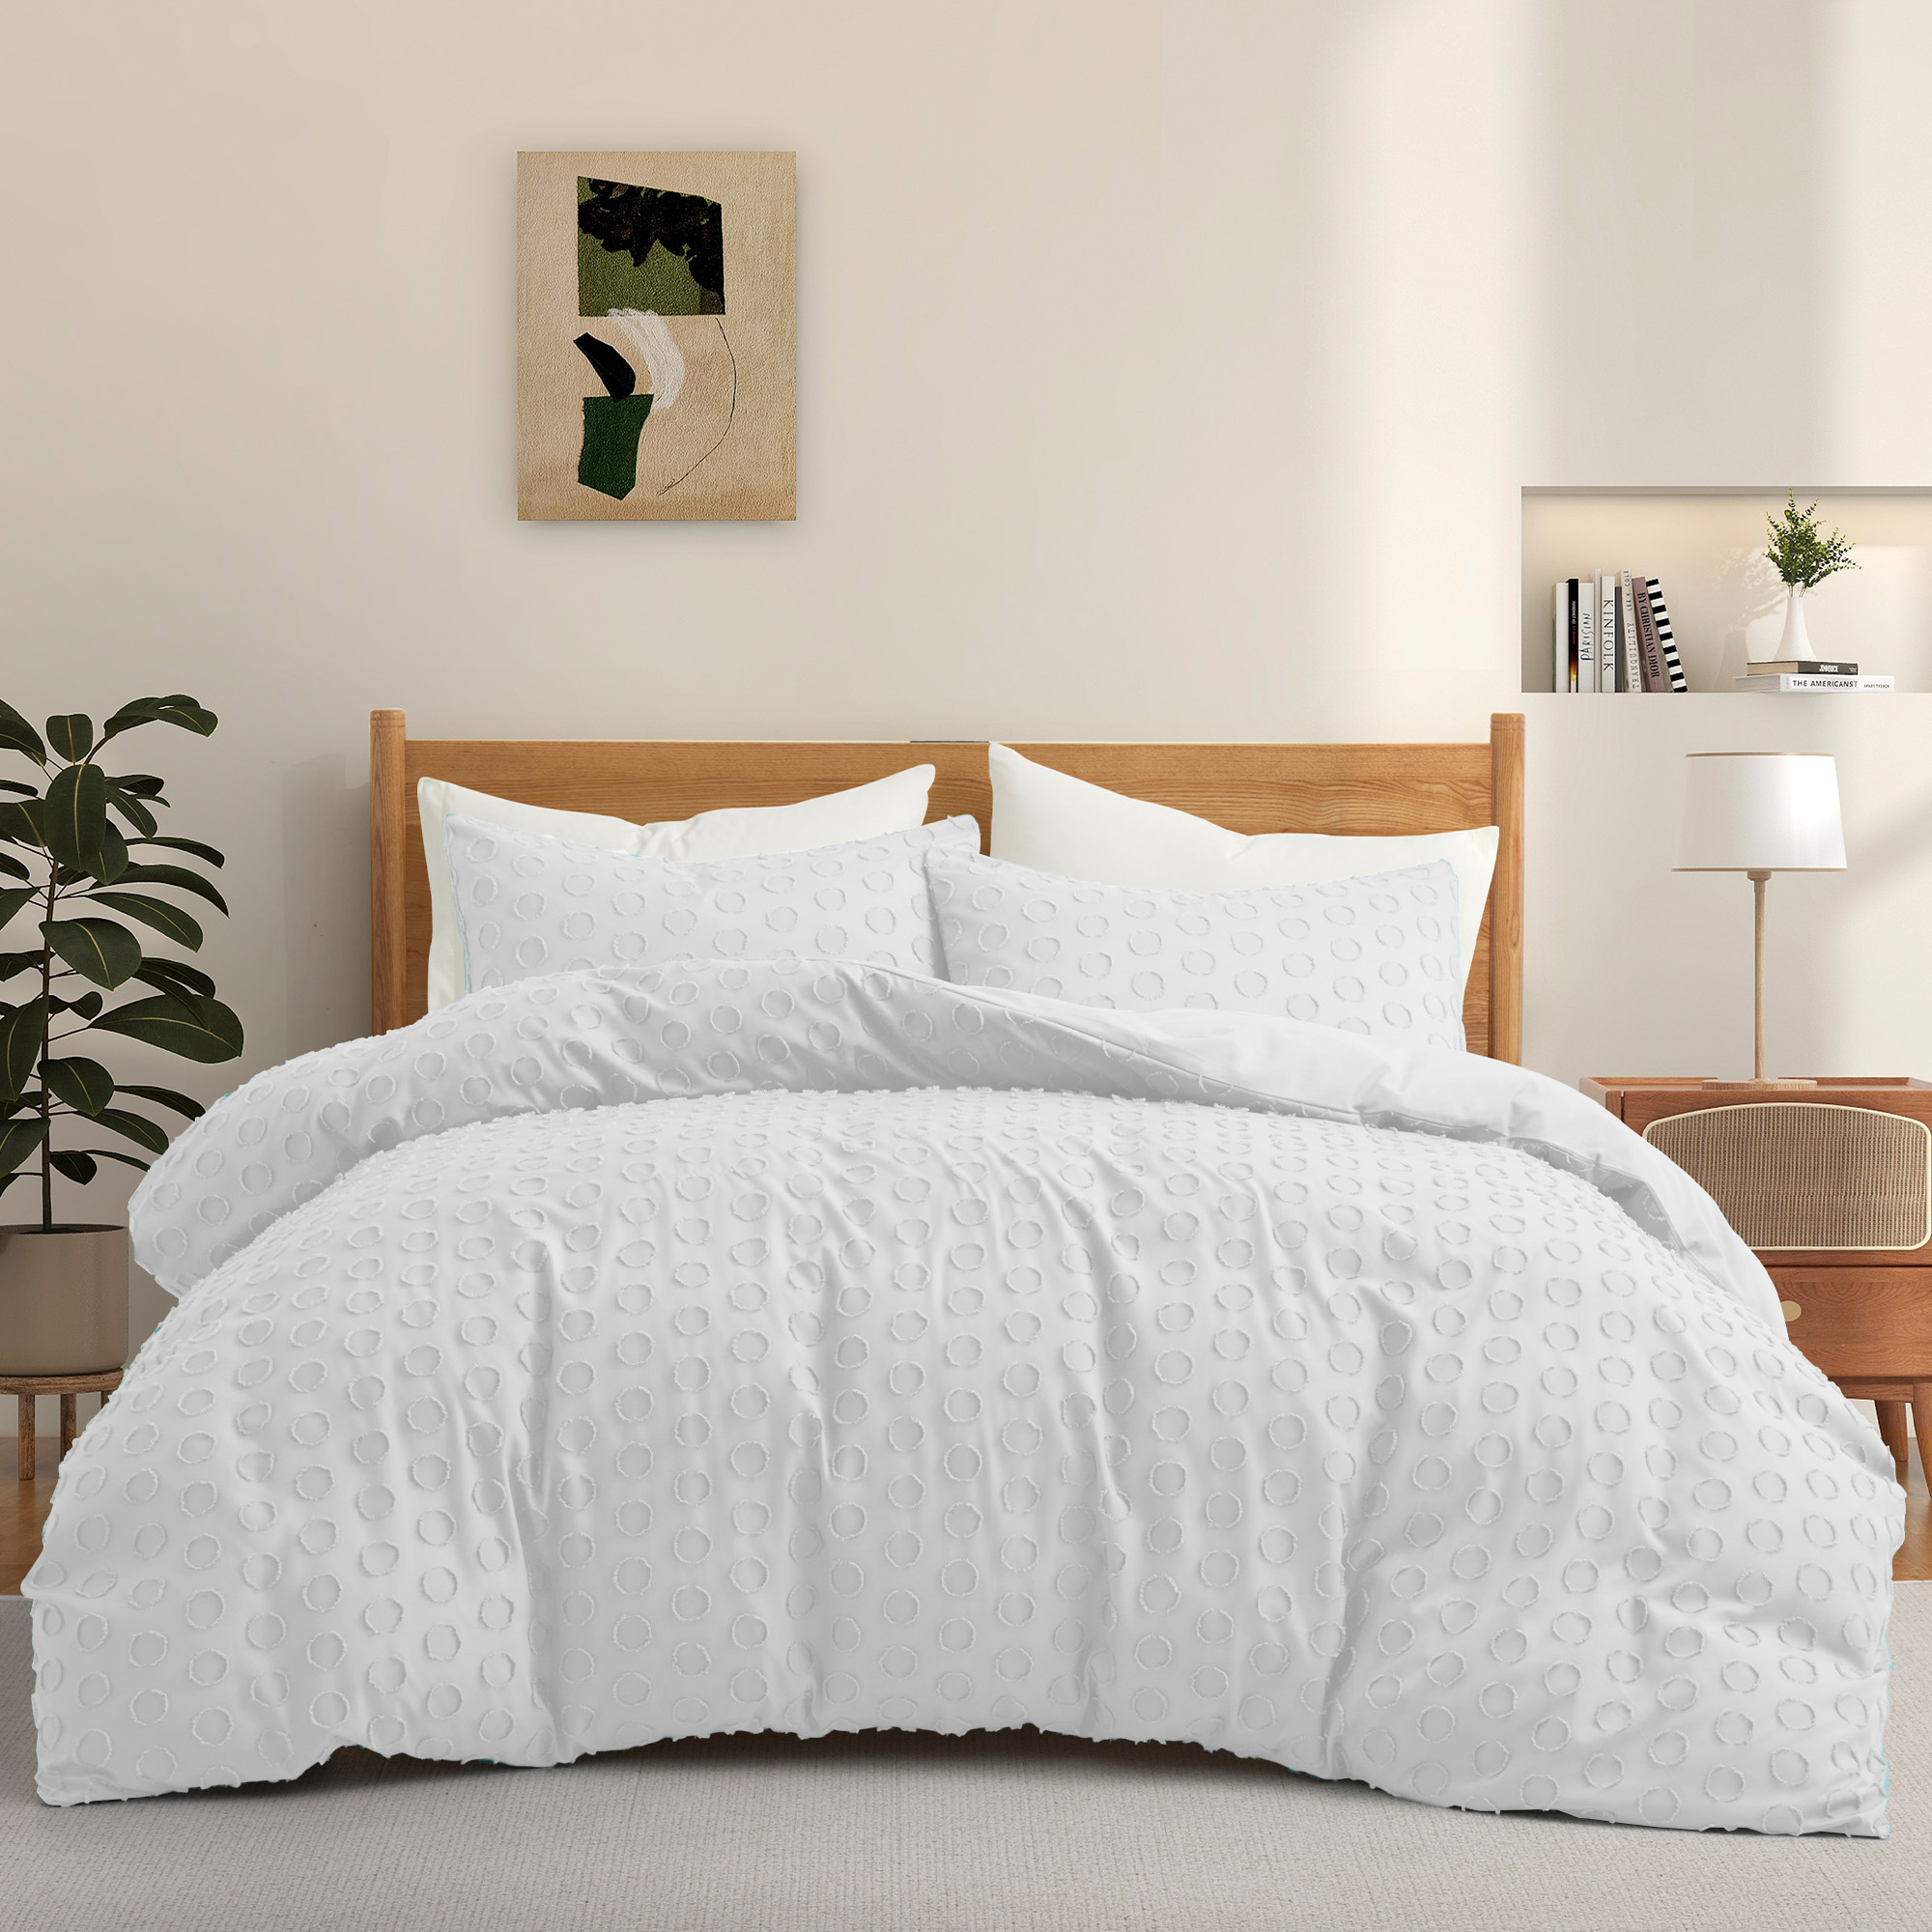 Luxury Bedding Soft Microfiber Duvet Cover And Sham Set - White, Full/Queen